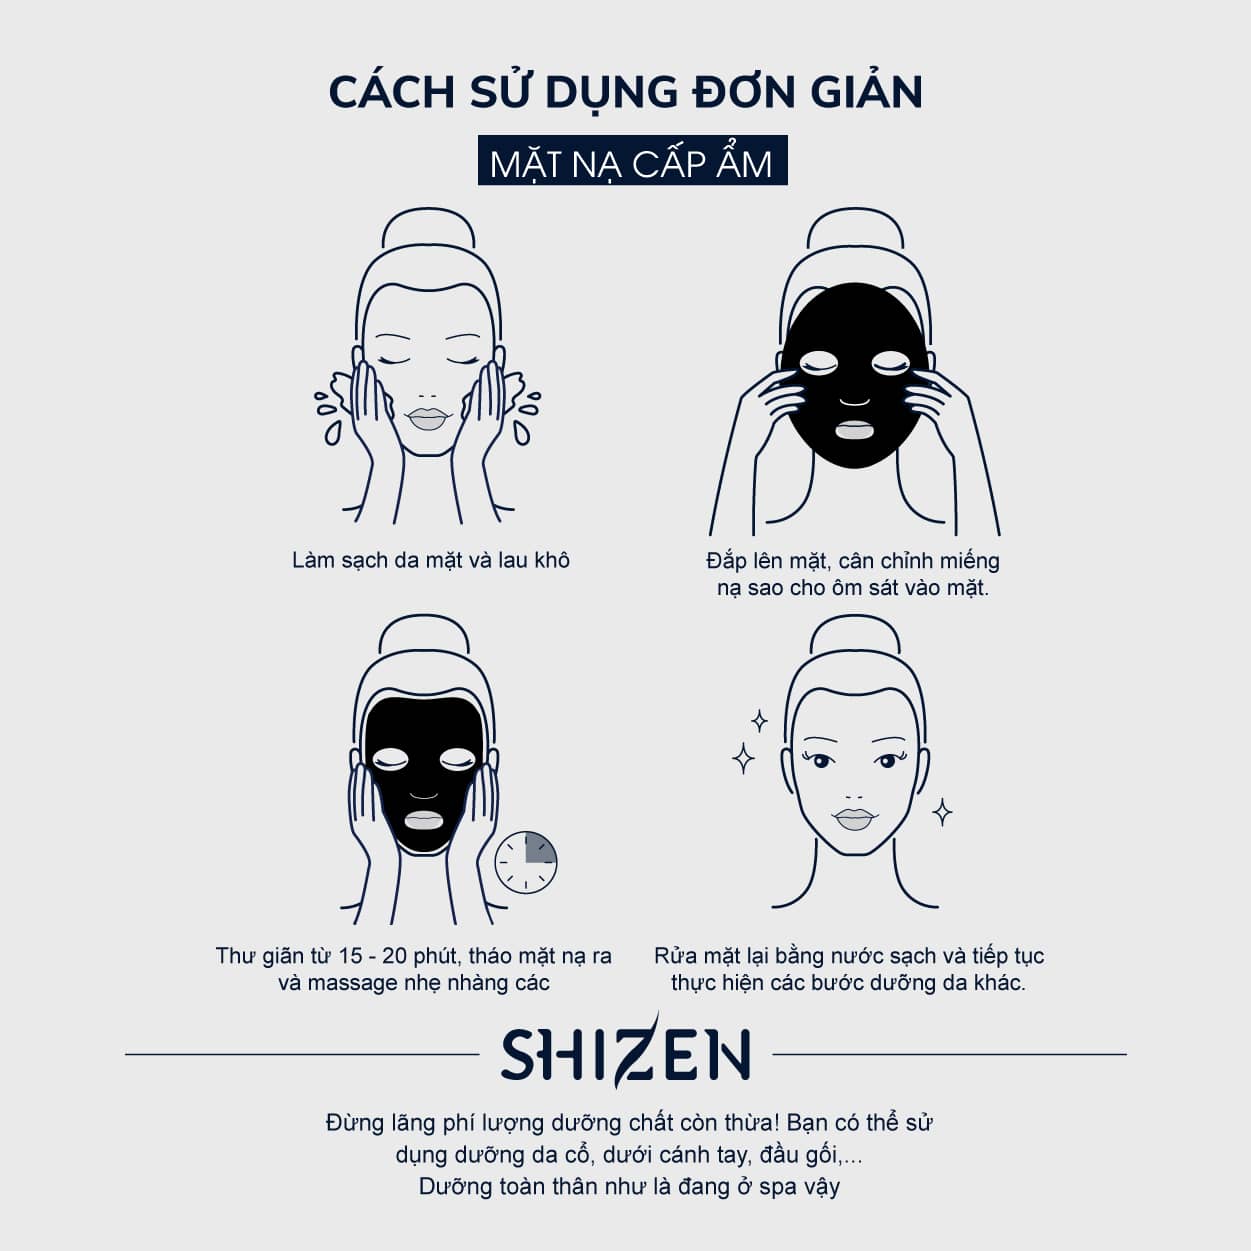 Sử dụng mặt nạ Shizen đúng cách để có được kết quả tốt nhất.